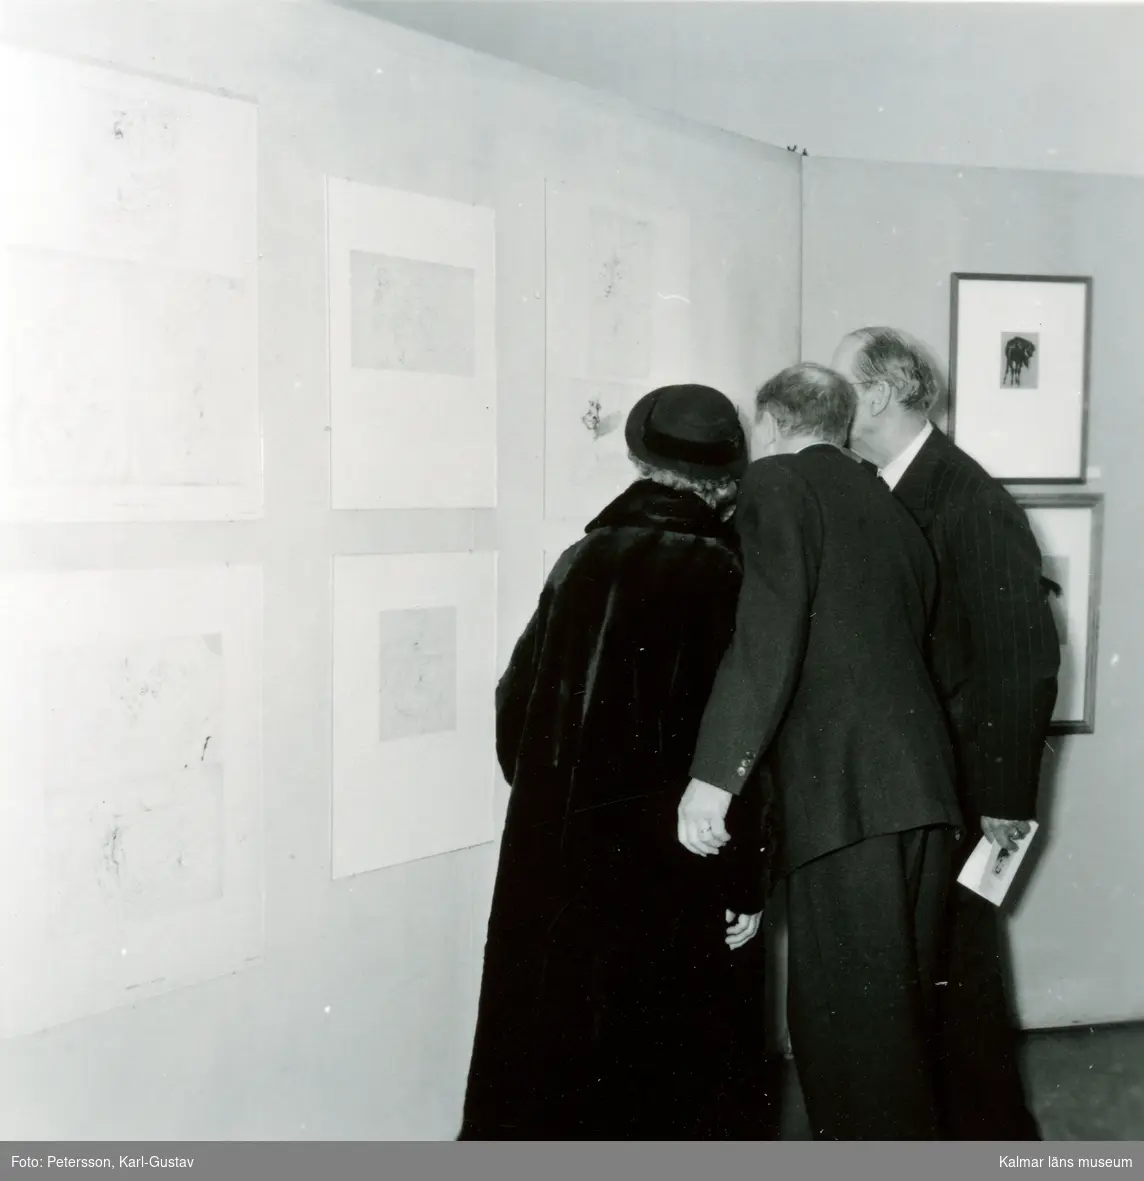 Tillfällig utställning från Kalmar konstmuseum Wahlbomsutställningen 1958. Besökare som beskådar tavlor och skulpturer.